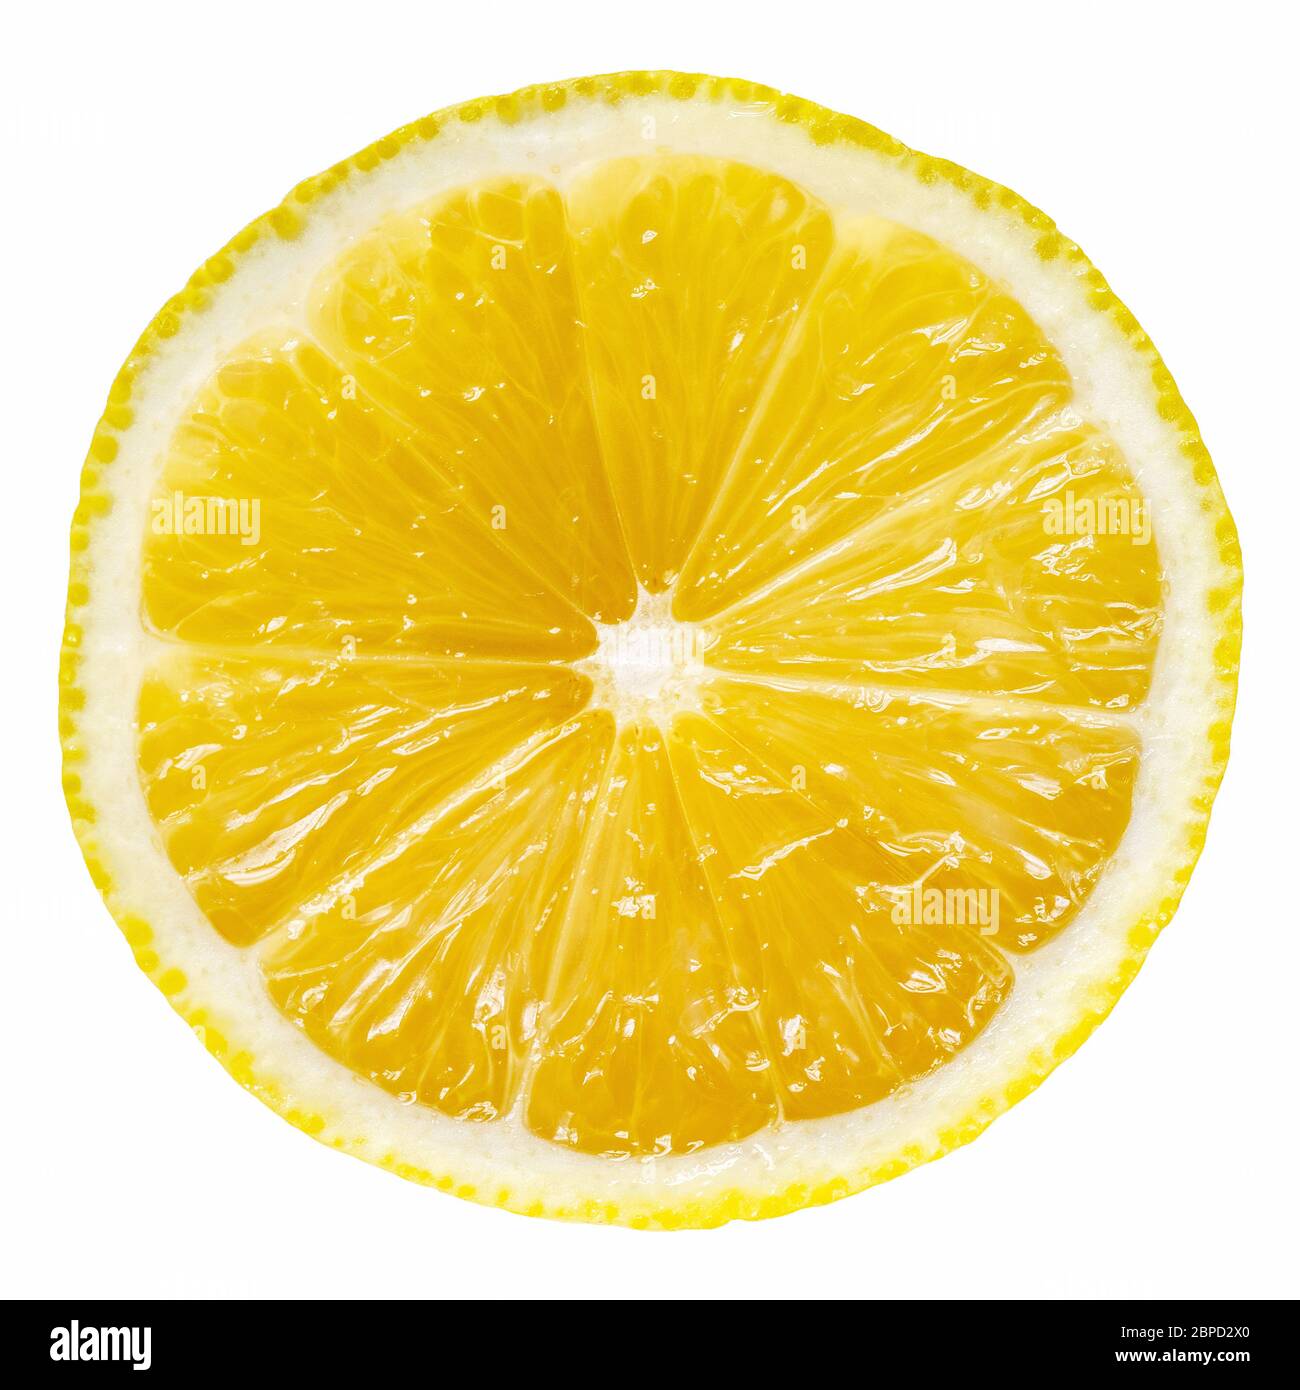 Lemon slice isolated on white background, fresh citrus fruit design element. Stock Photo